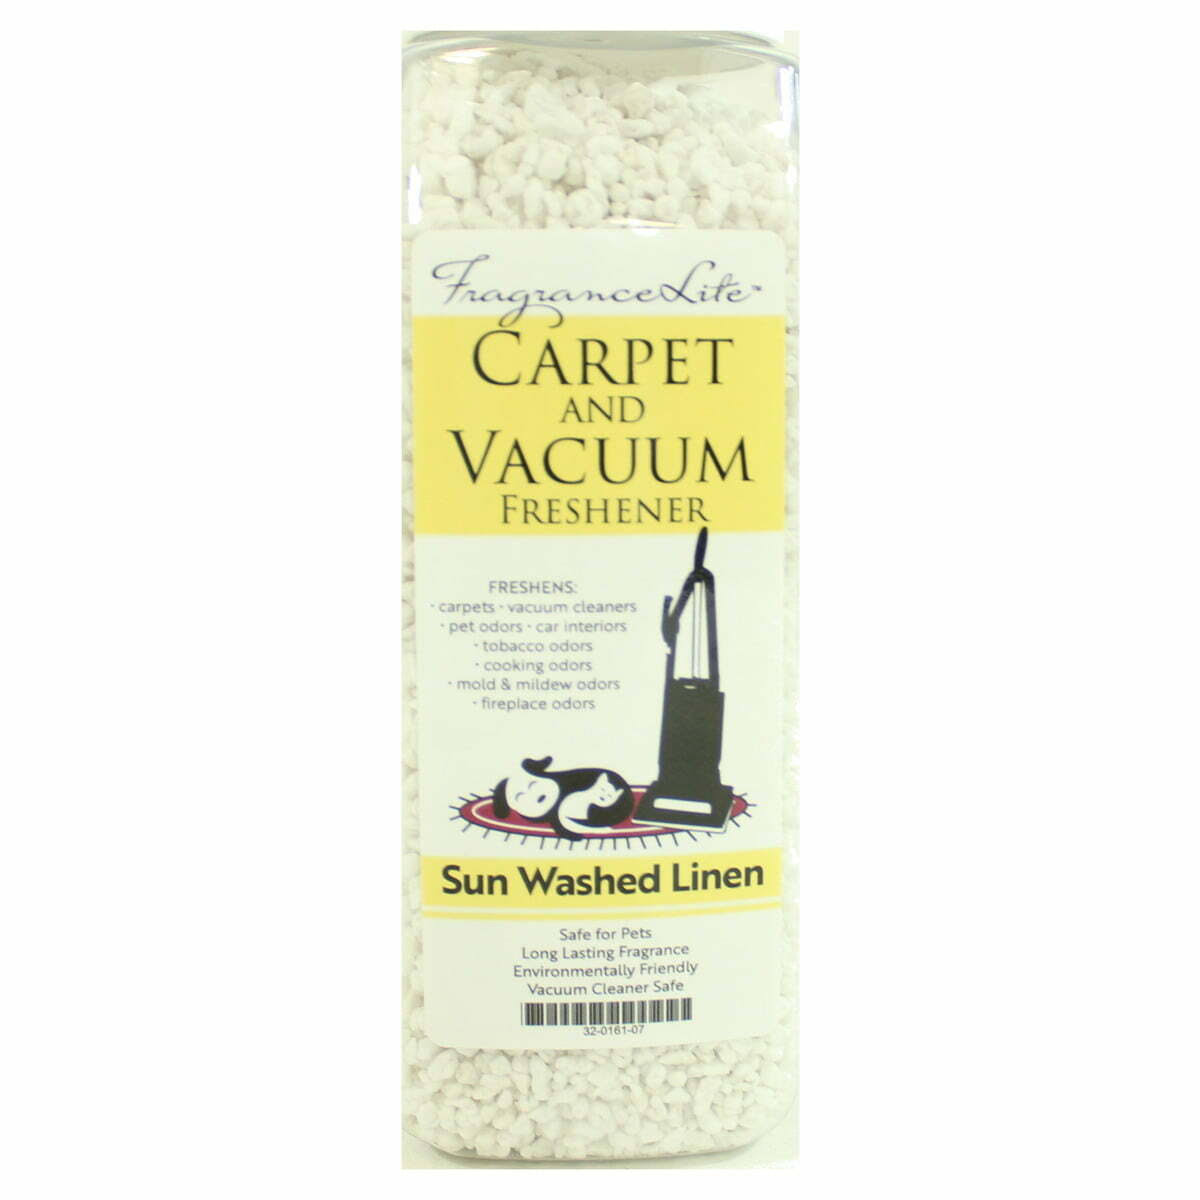 Sun Washed Linen Fragrance Lite Carpet and Vacuum Freshener Pet Safe Vacuum Cleaner Safe